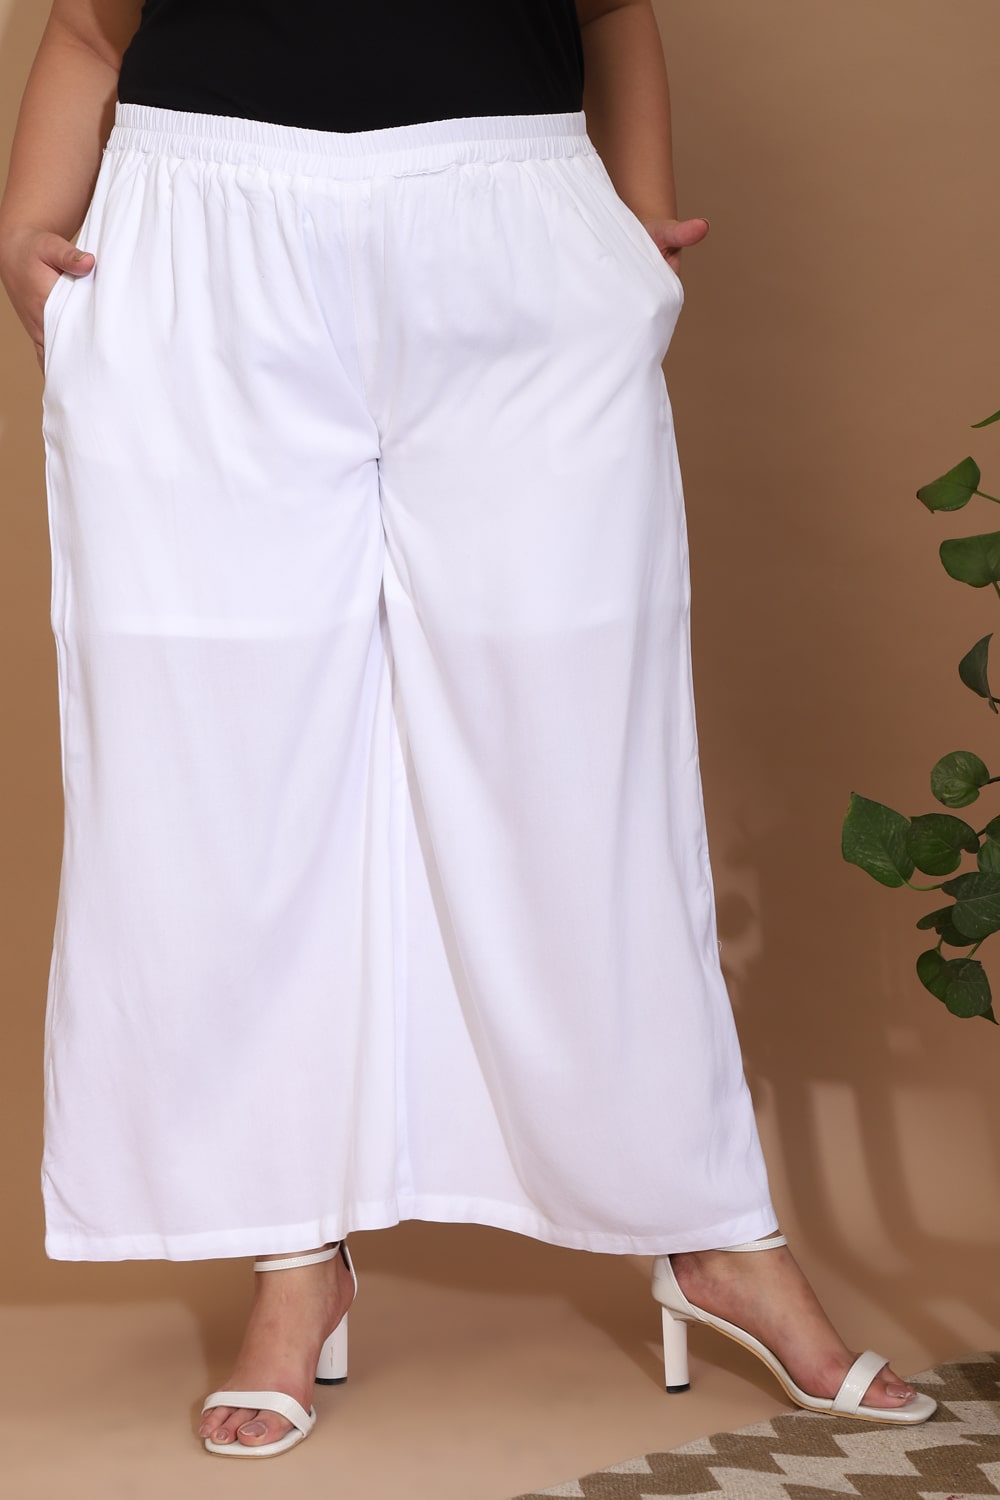 Paz Torras bordeaux capri wide cotton trousers plus size available